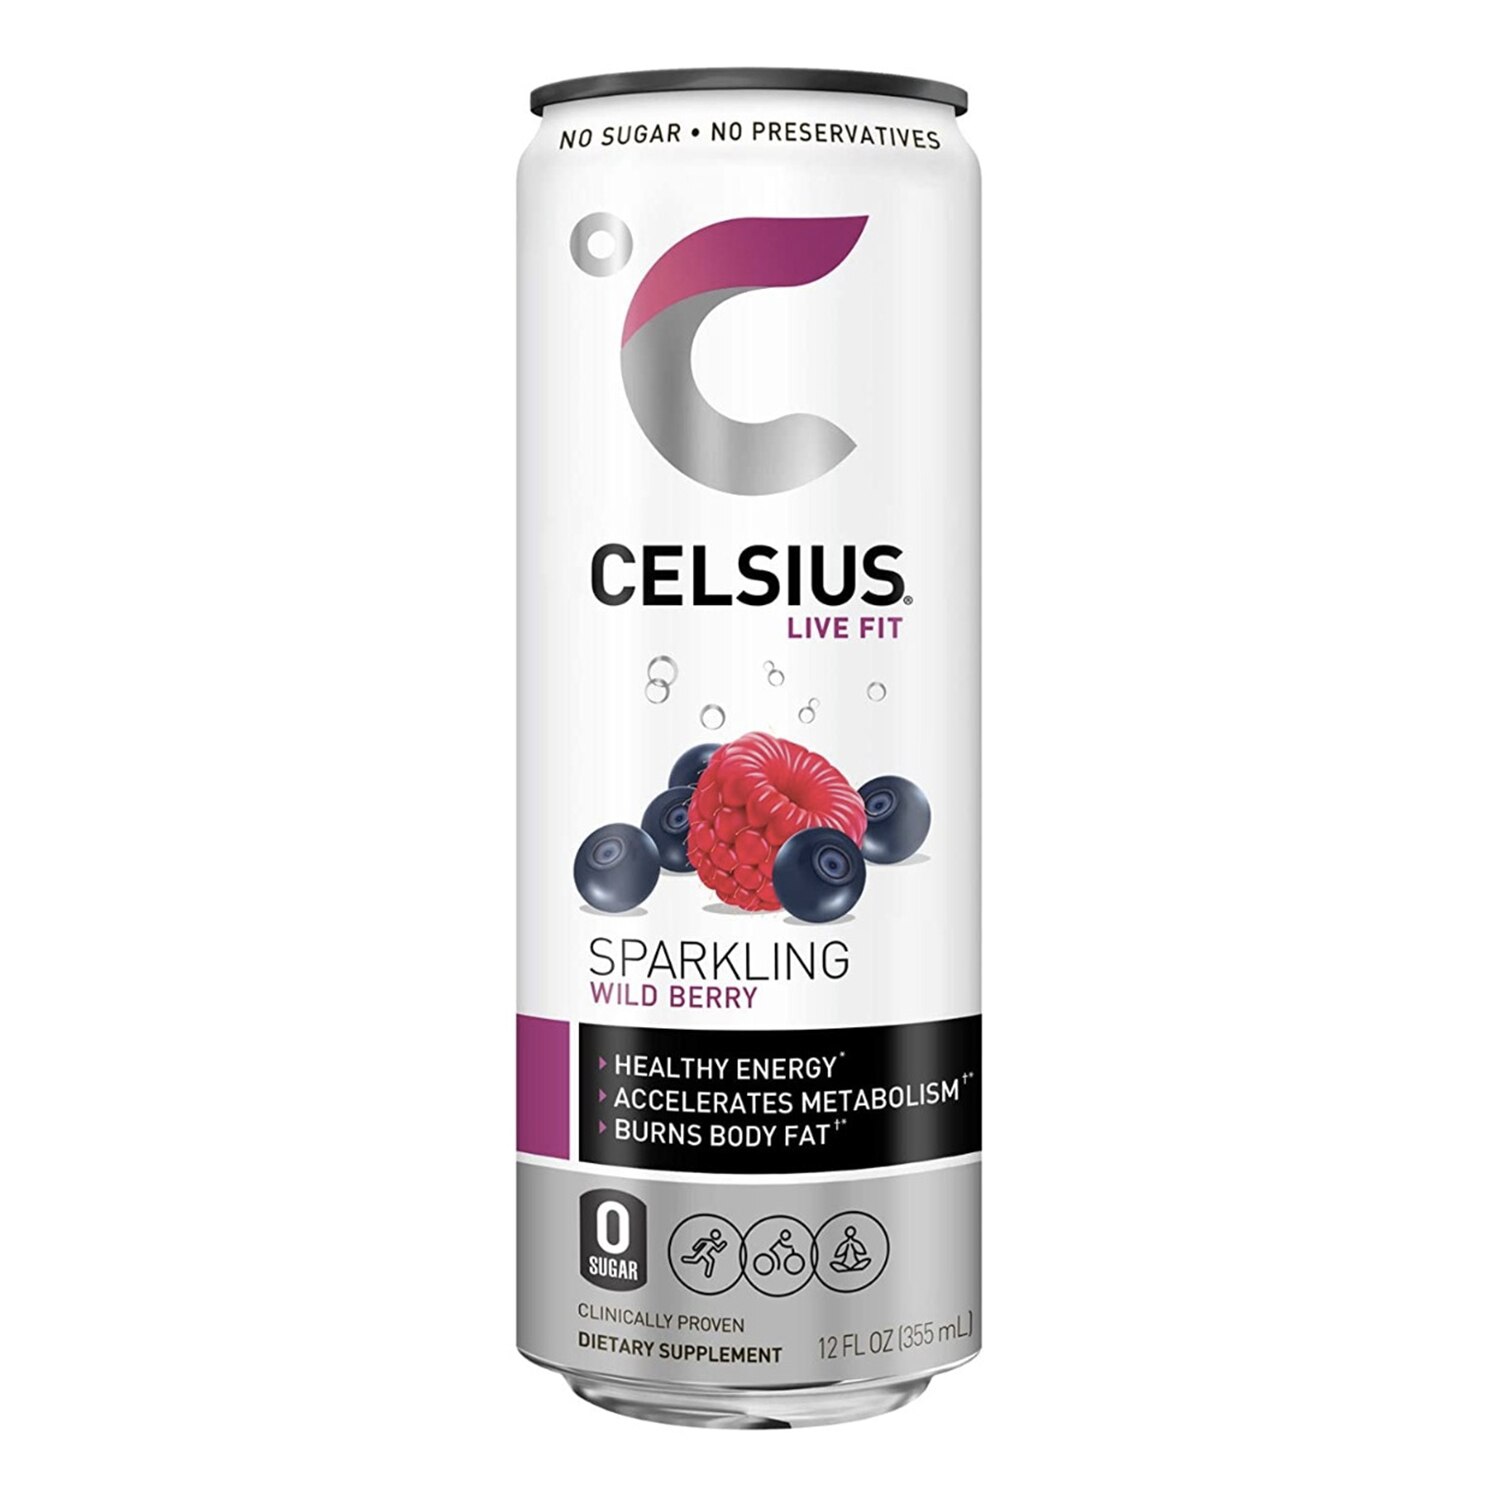 Celsius Live Fit Energy Drink, 12 oz